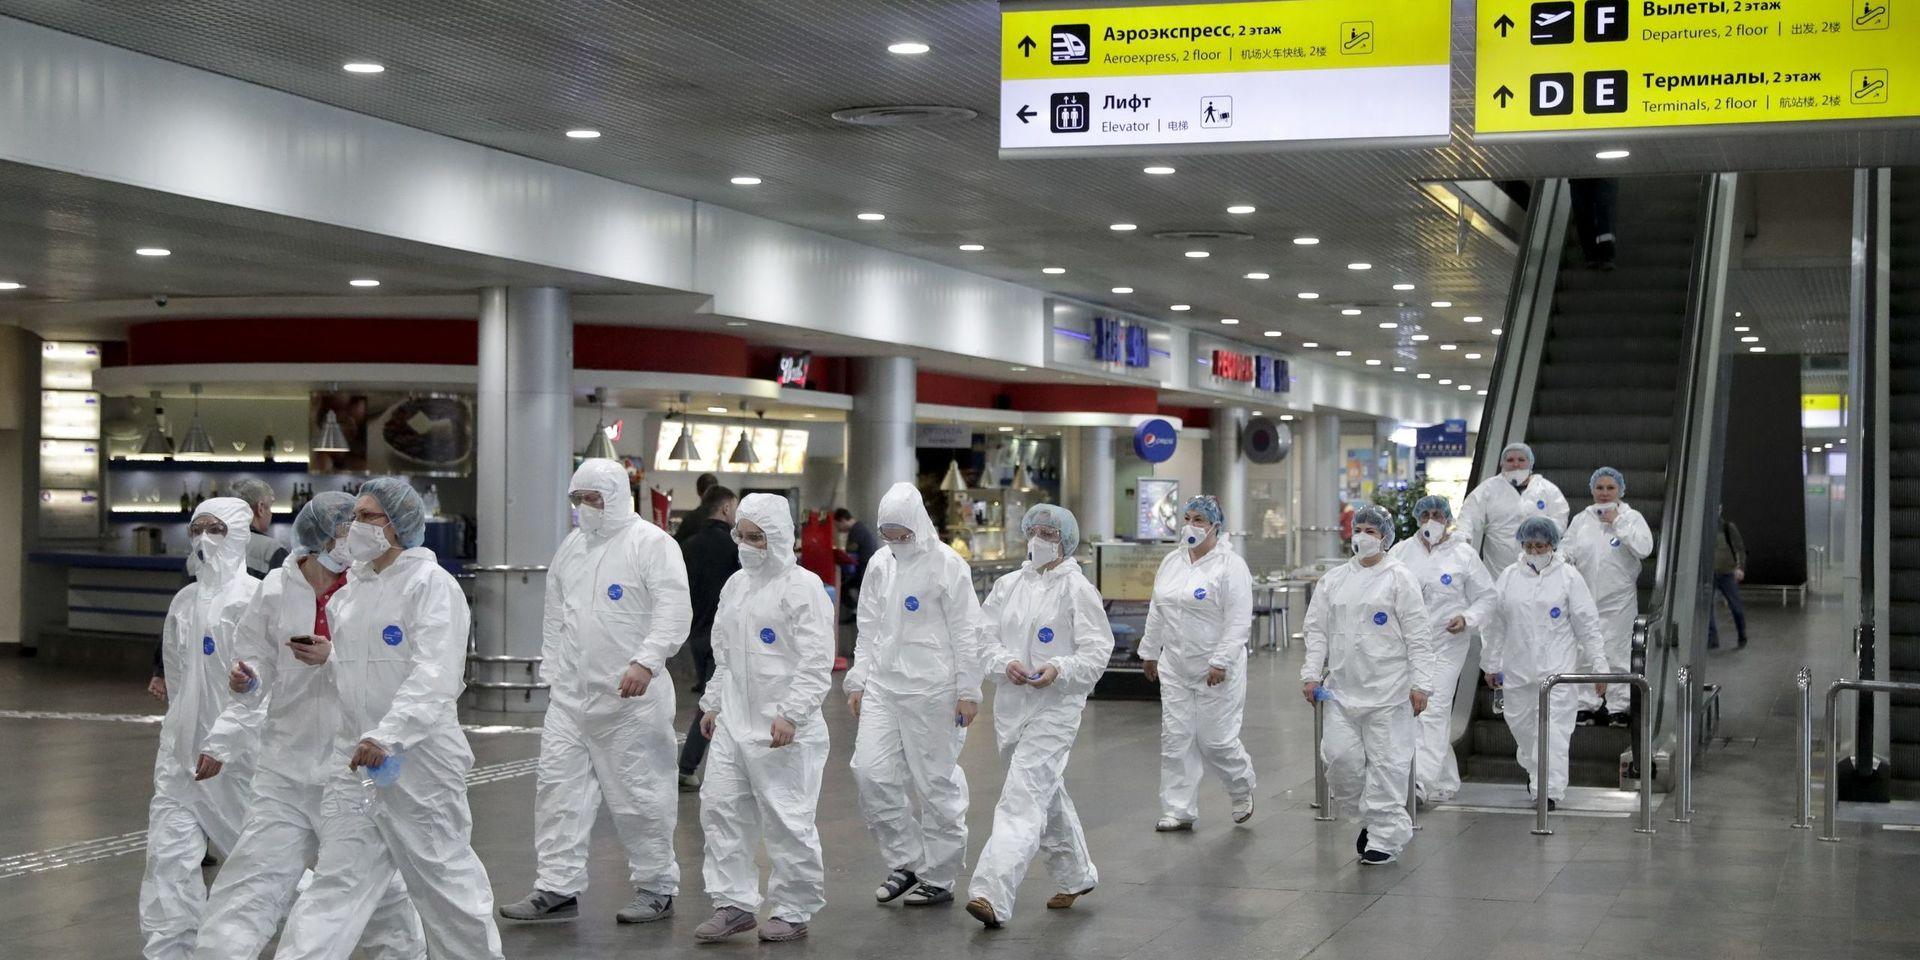 Rysk sjukvårdsarbetare på väg att påbörja sitt arbete med att kontrollera resenärer som anlänt från utlandet vid Sjeremetevos internationella flygplats utanför Moskva i förra veckan. Från och med fredag ställs internationell flygtrafik in i Ryssland.